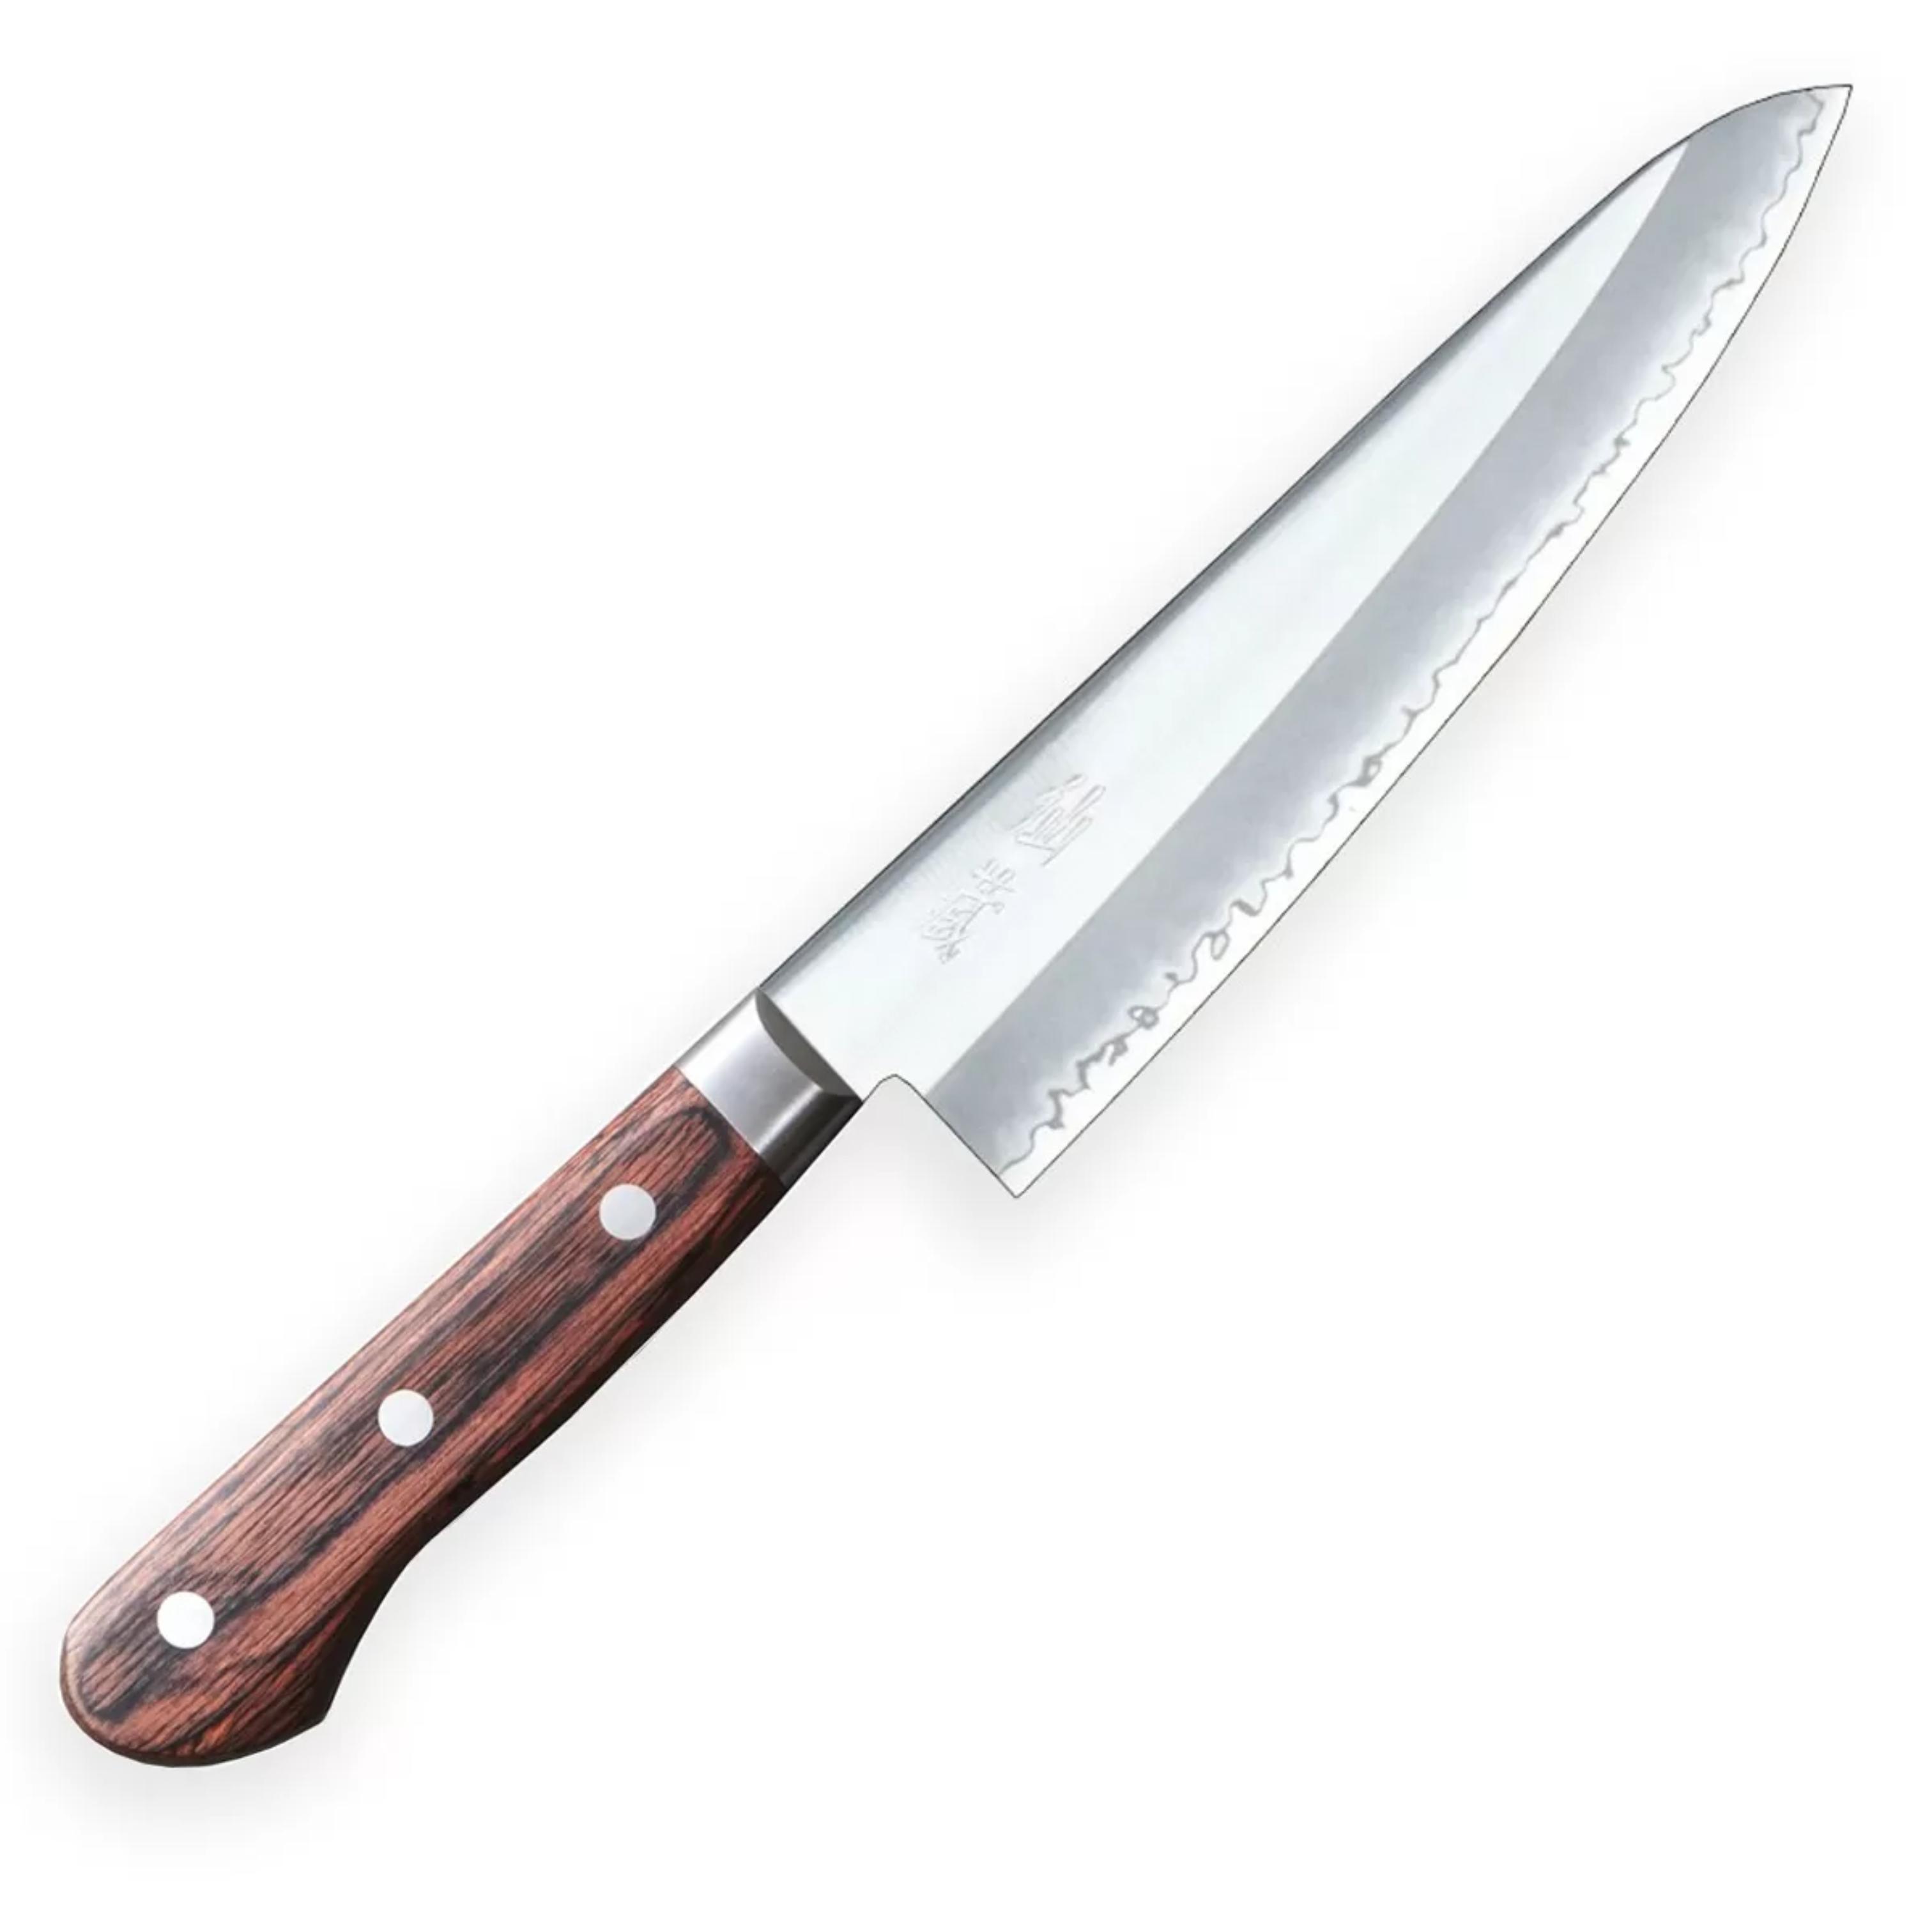 Нож кухонный Шеф 180мм, SUNСRAFT (SenzoClad) ,  сталь AUS-10 60 HRC Япония